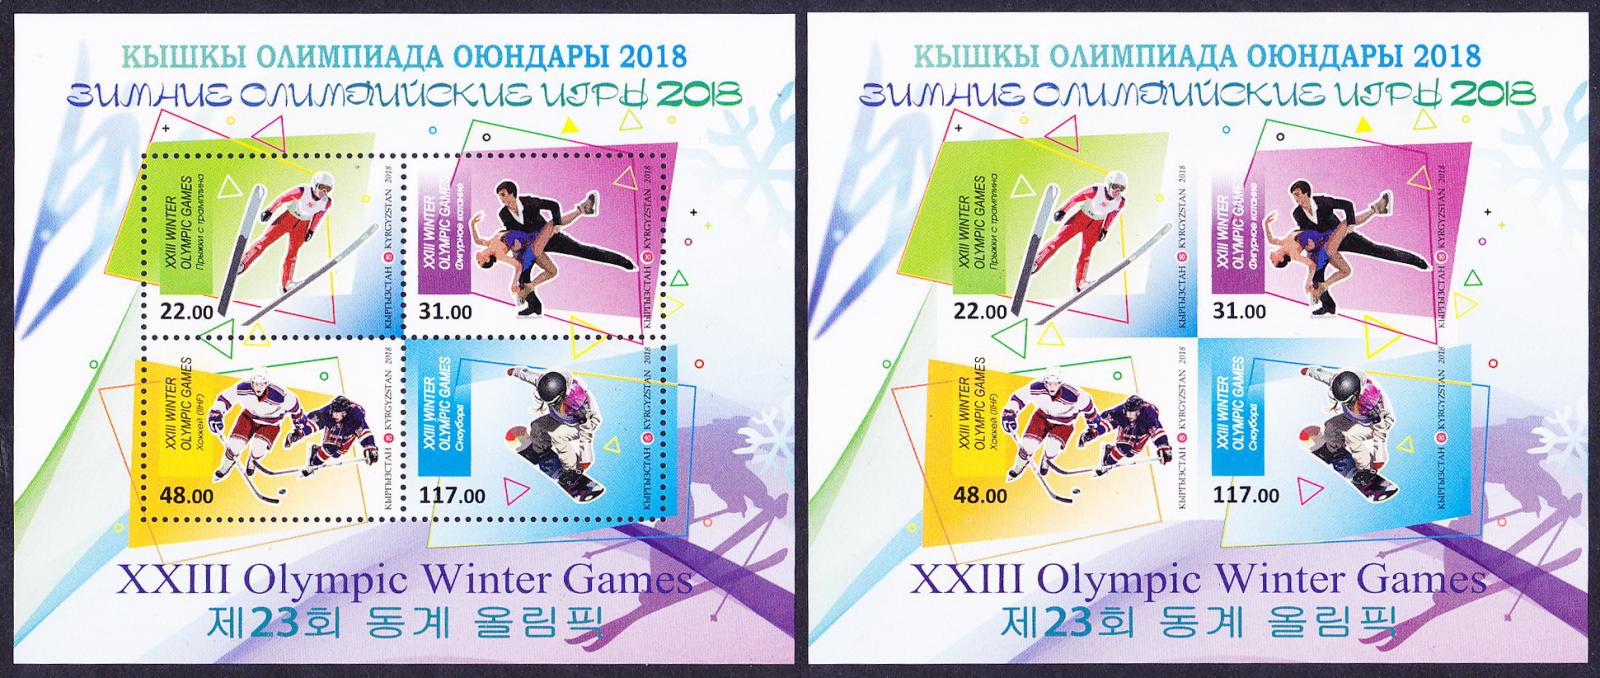 почтовая марка Олимпиады Пхёнчхан 2018 Киргизия